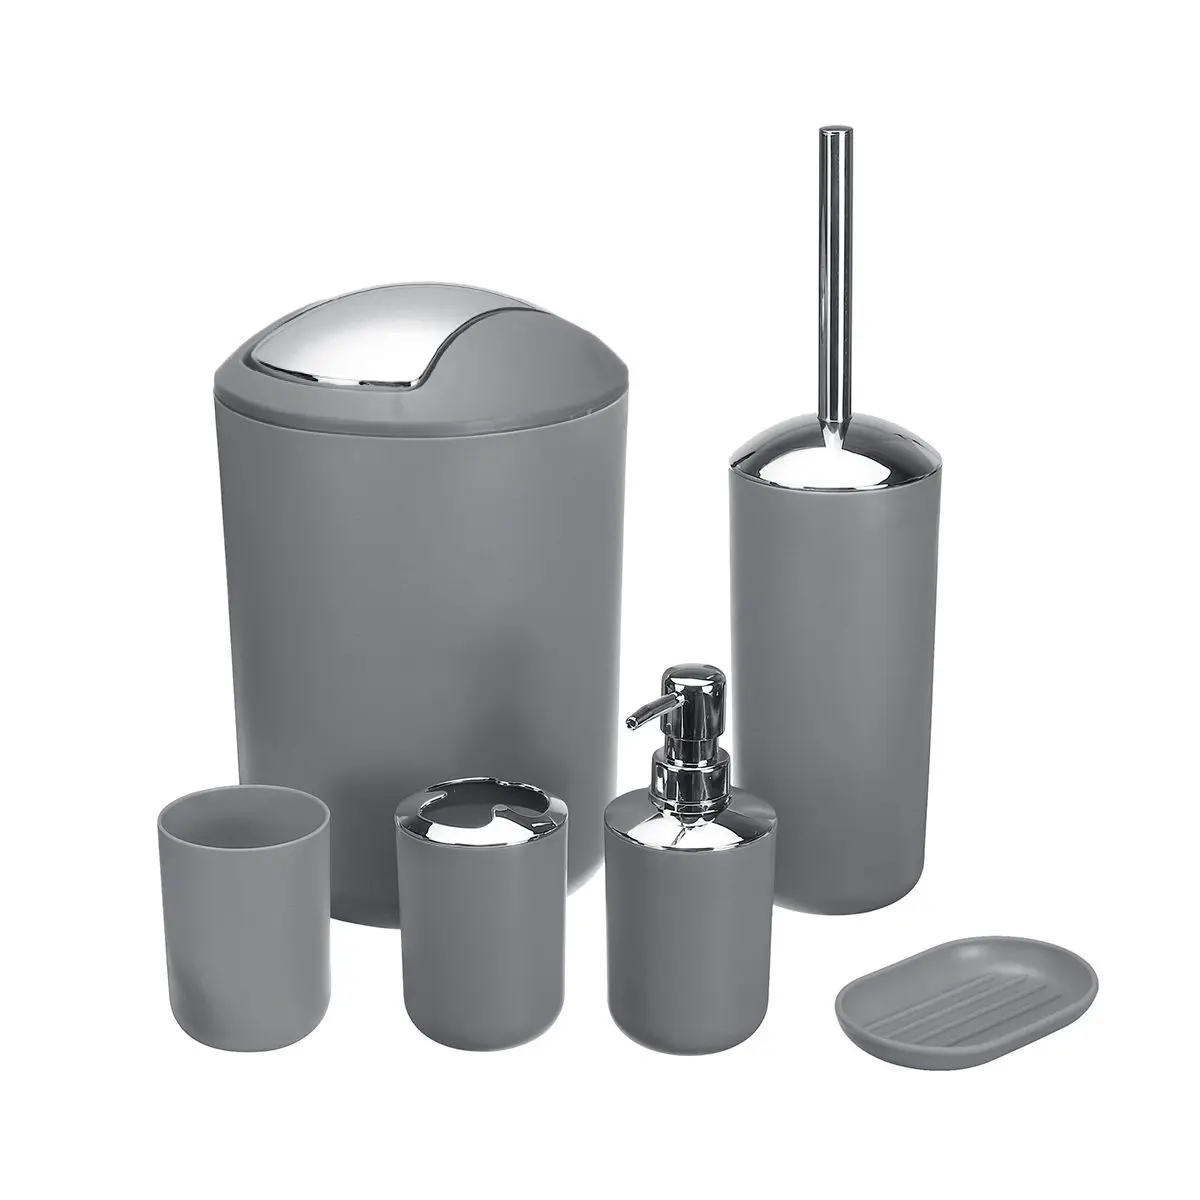 6 шт./компл. набор аксессуаров для ванной комнаты дозатор для лосьона держатель зубной щетки чашка мыльница туалетная щетка мусорное ведро - Цвет: Grey